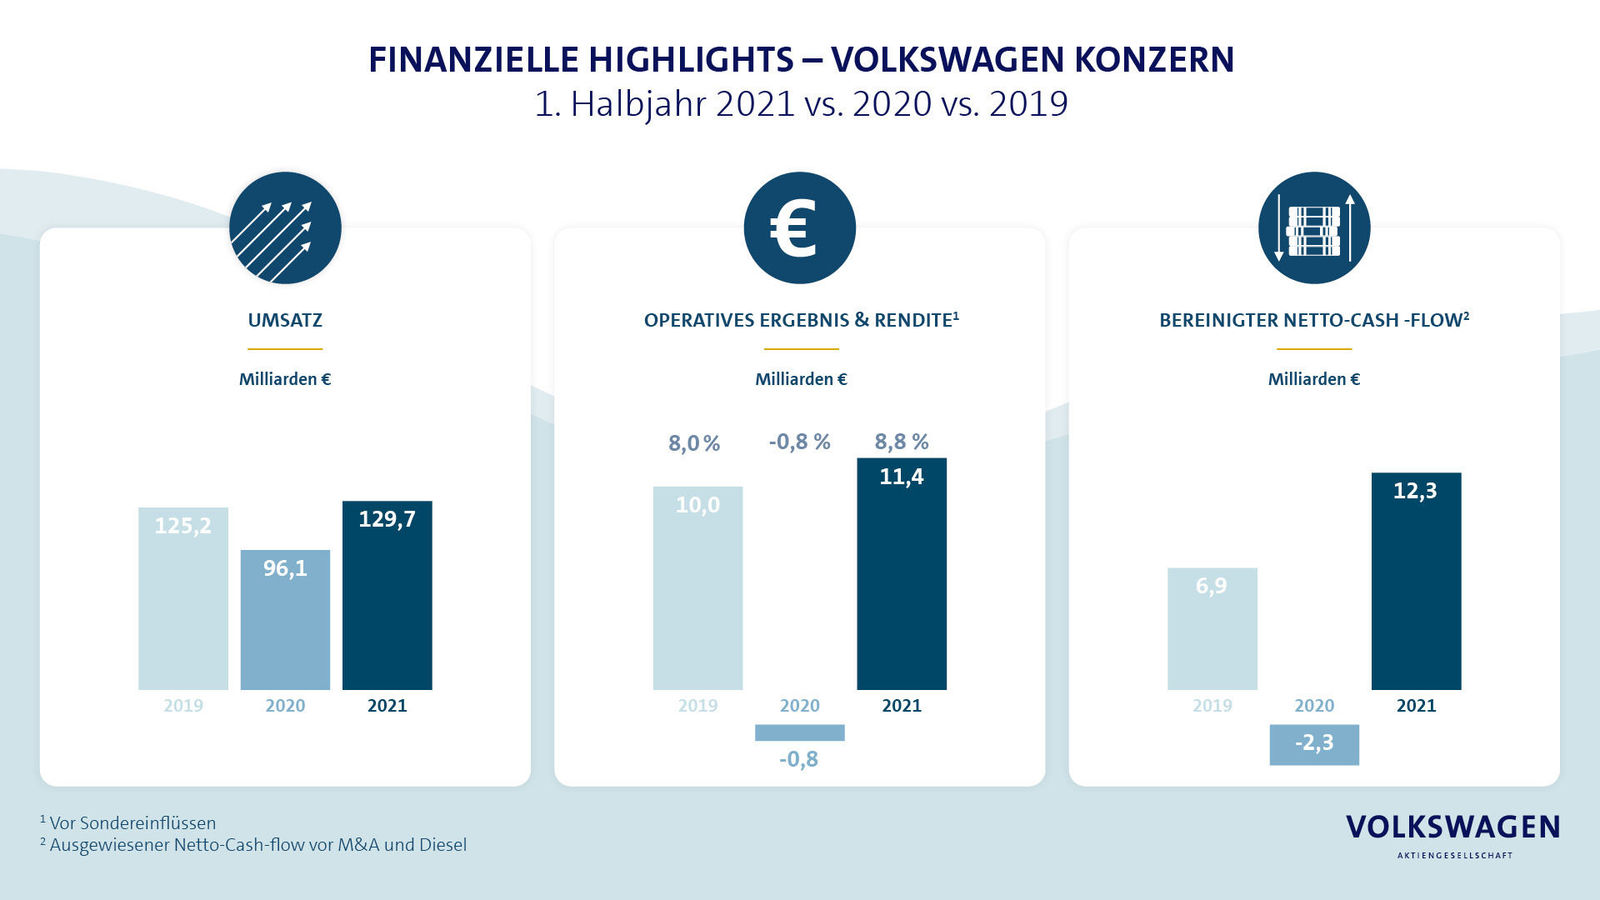 Volkswagen Konzern hebt nach Rekordergebnis im ersten Halbjahr Ausblick für 2021 an